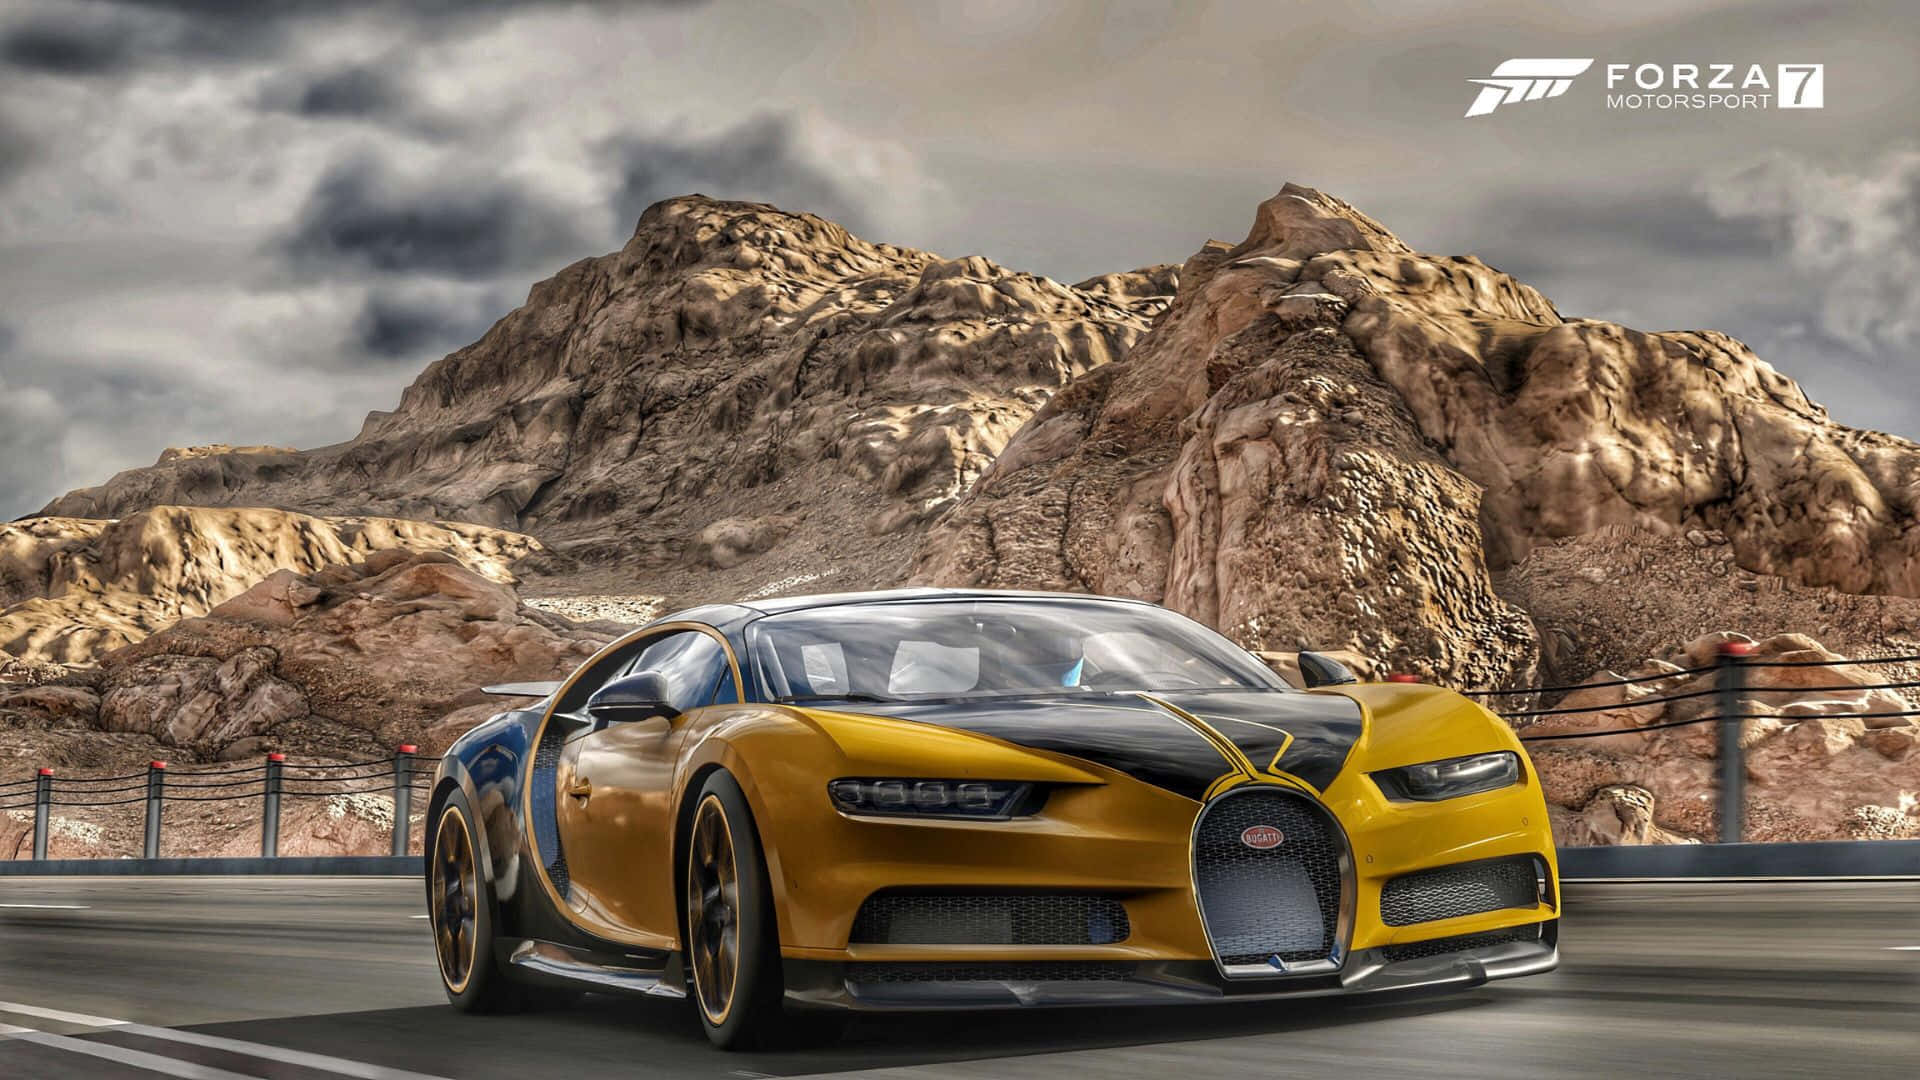 Unosnapshot Ad Alta Definizione Dell'emozionante Esperienza Di Gioco Di Forza Motorsport 7.